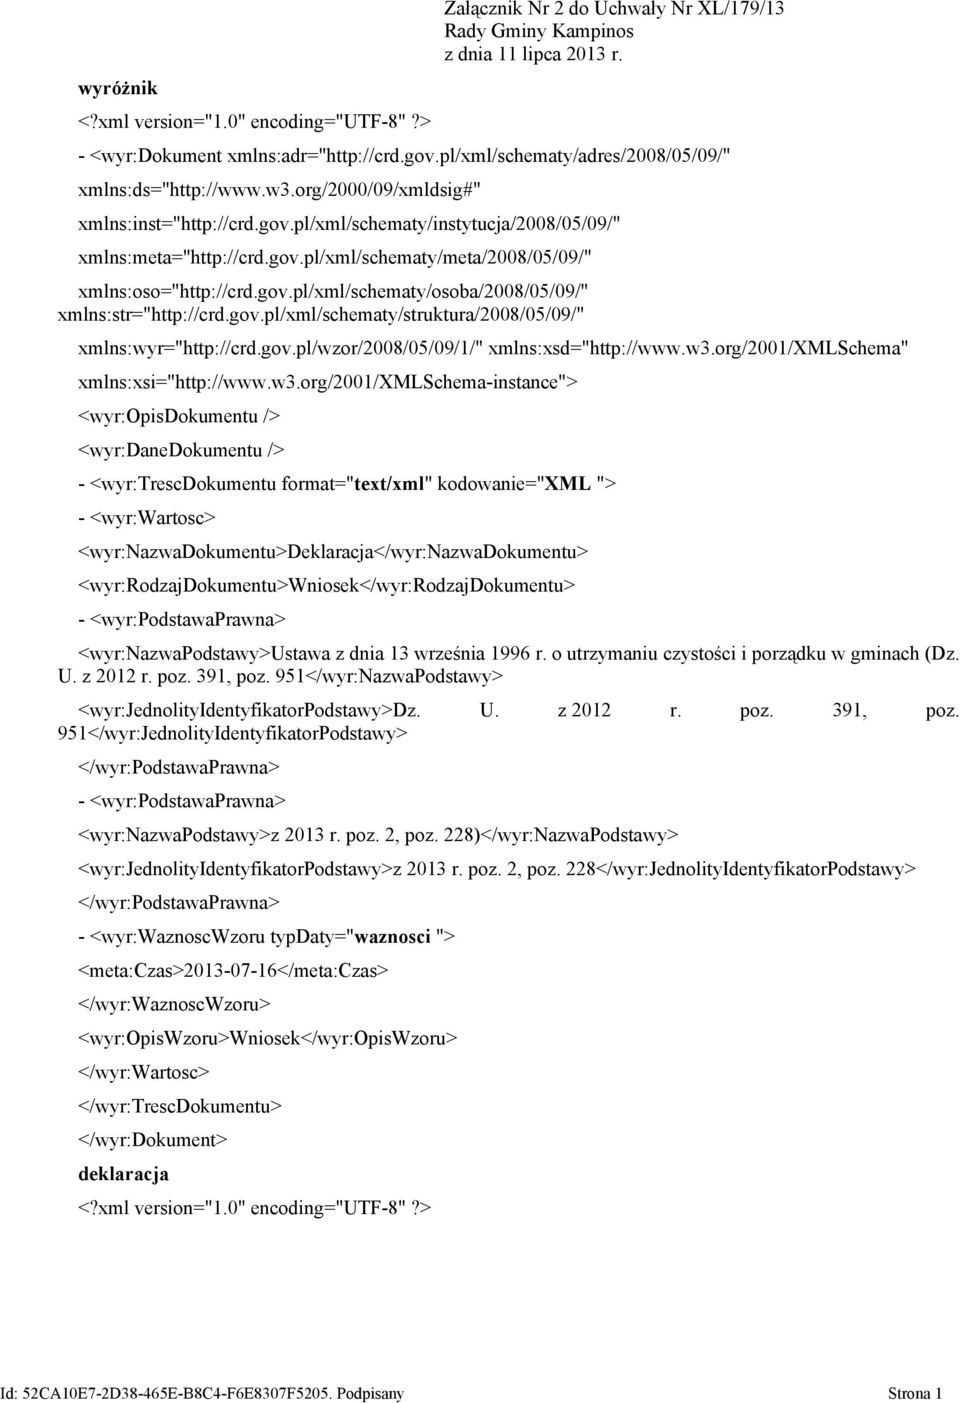 gov.pl/xml/schematy/osoba/2008/05/09/" xmlns:str="http://crd.gov.pl/xml/schematy/struktura/2008/05/09/" xmlns:wyr="http://crd.gov.pl/wzor/2008/05/09/1/" xmlns:xsd="http://www.w3.